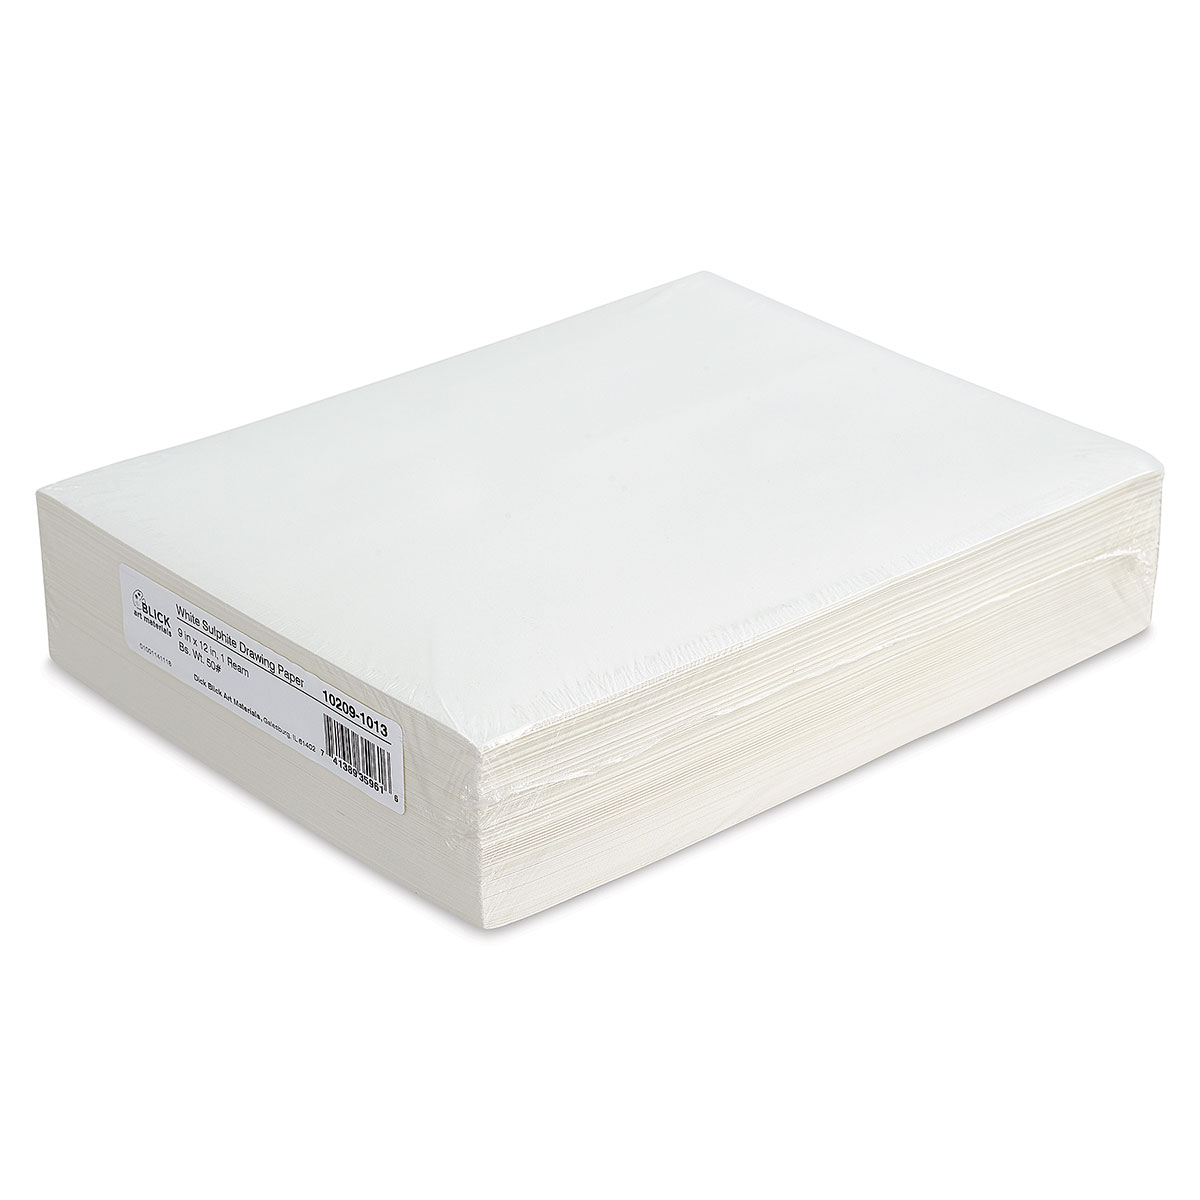 Colorations White Sulphite Paper - 9 x 12, 80 lb.